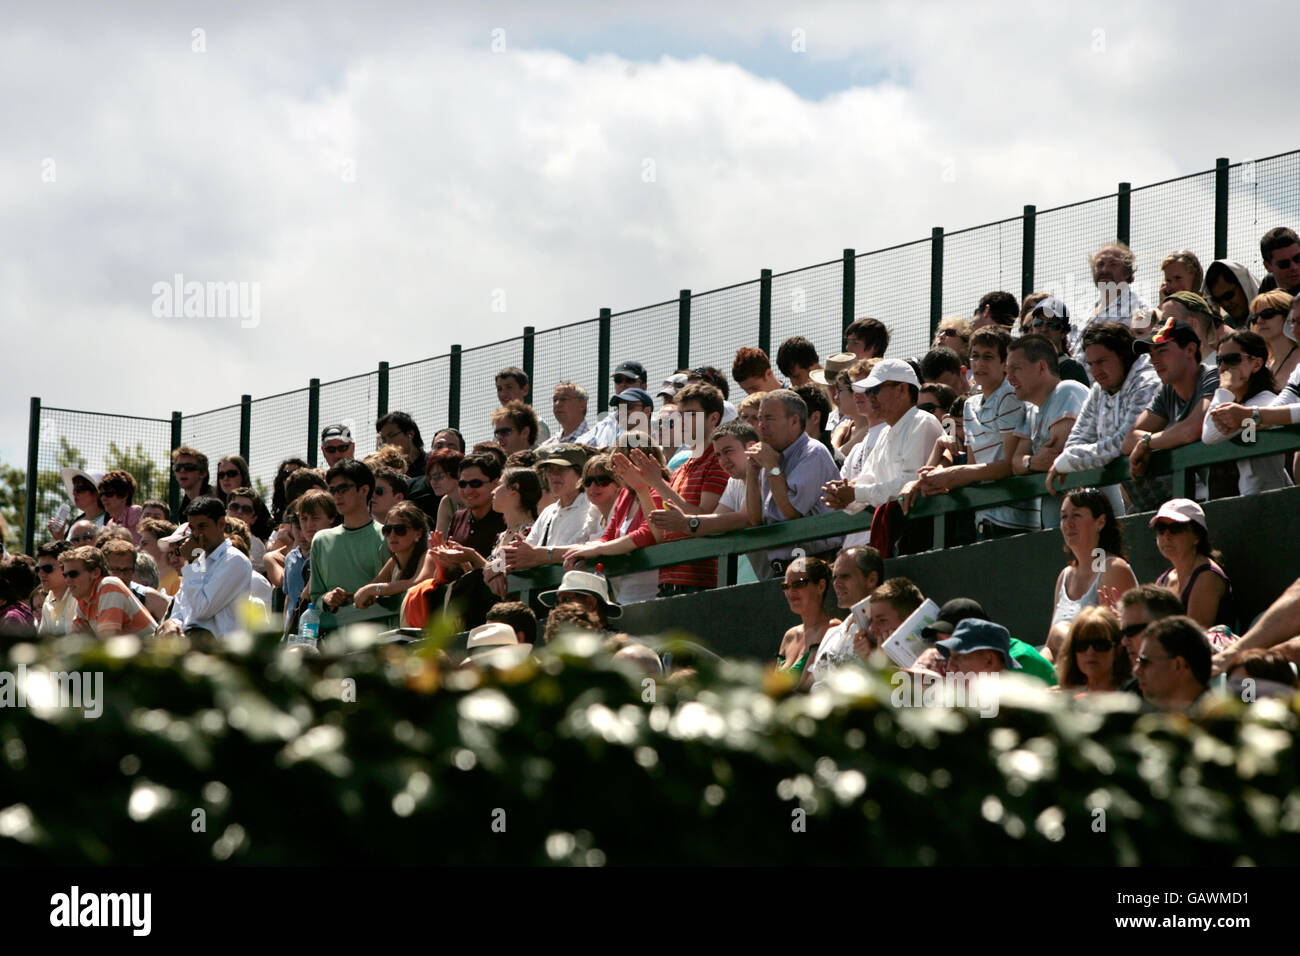 Tennis - Campionati di Wimbledon 2008 - giorno quattro - l'All England Club. Gli spettatori si immergerono nell'atmosfera di Wimbledon Foto Stock